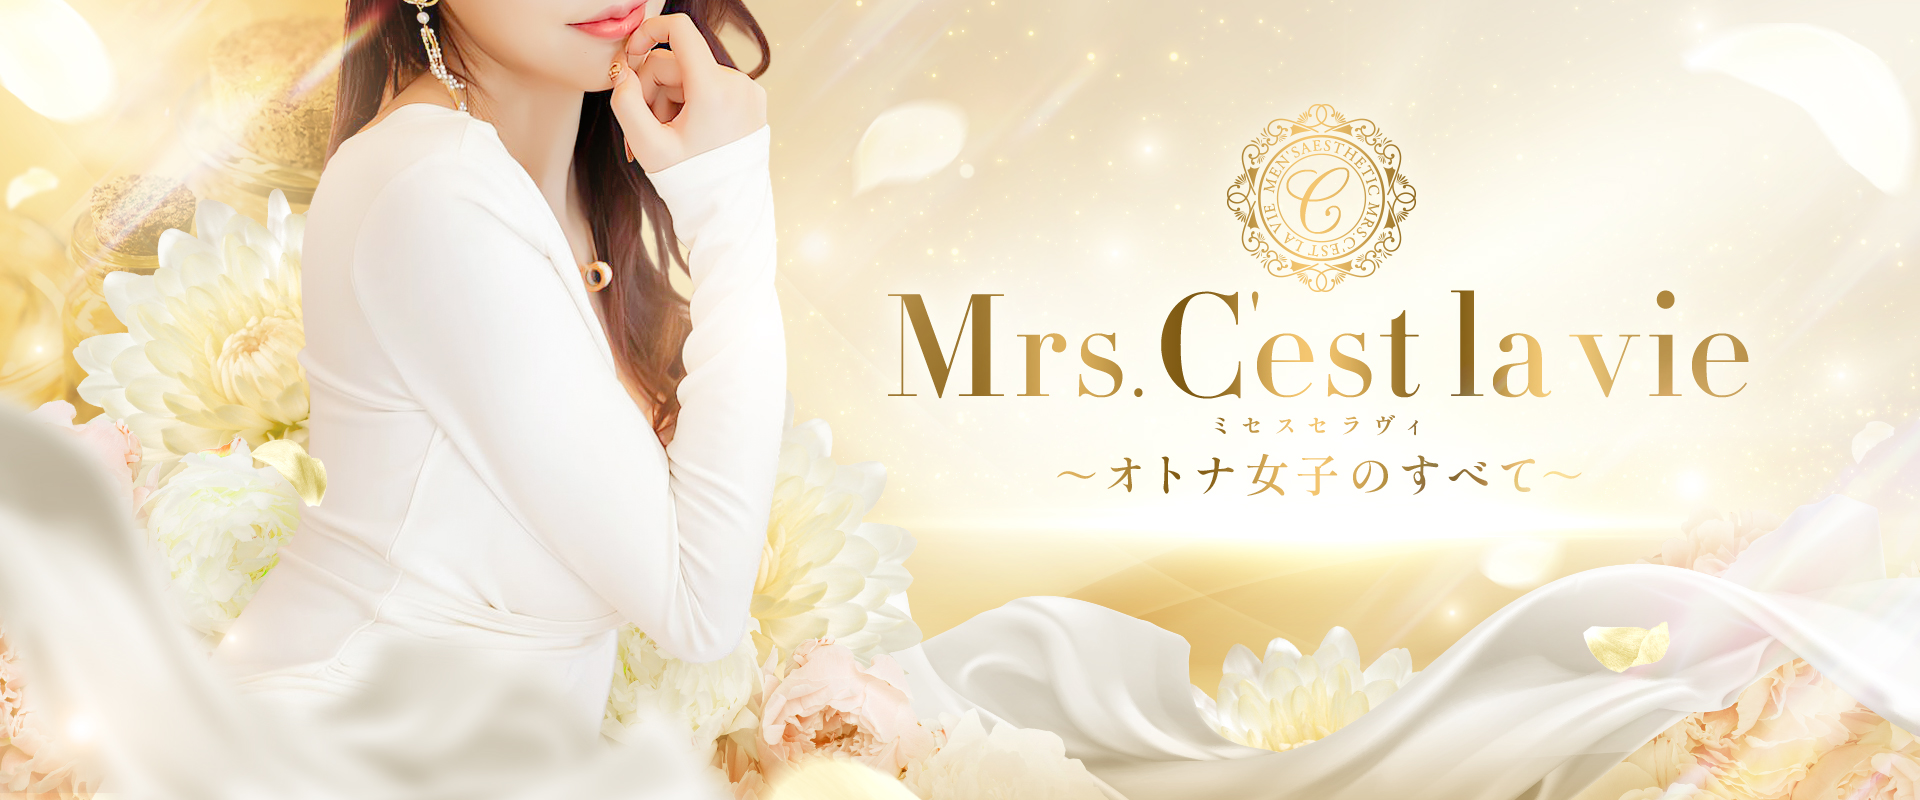 大阪 堺東メンズエステ『Mrs.C\'est la vie（ミセスセラヴィ）〜オトナ女子のすべて〜』